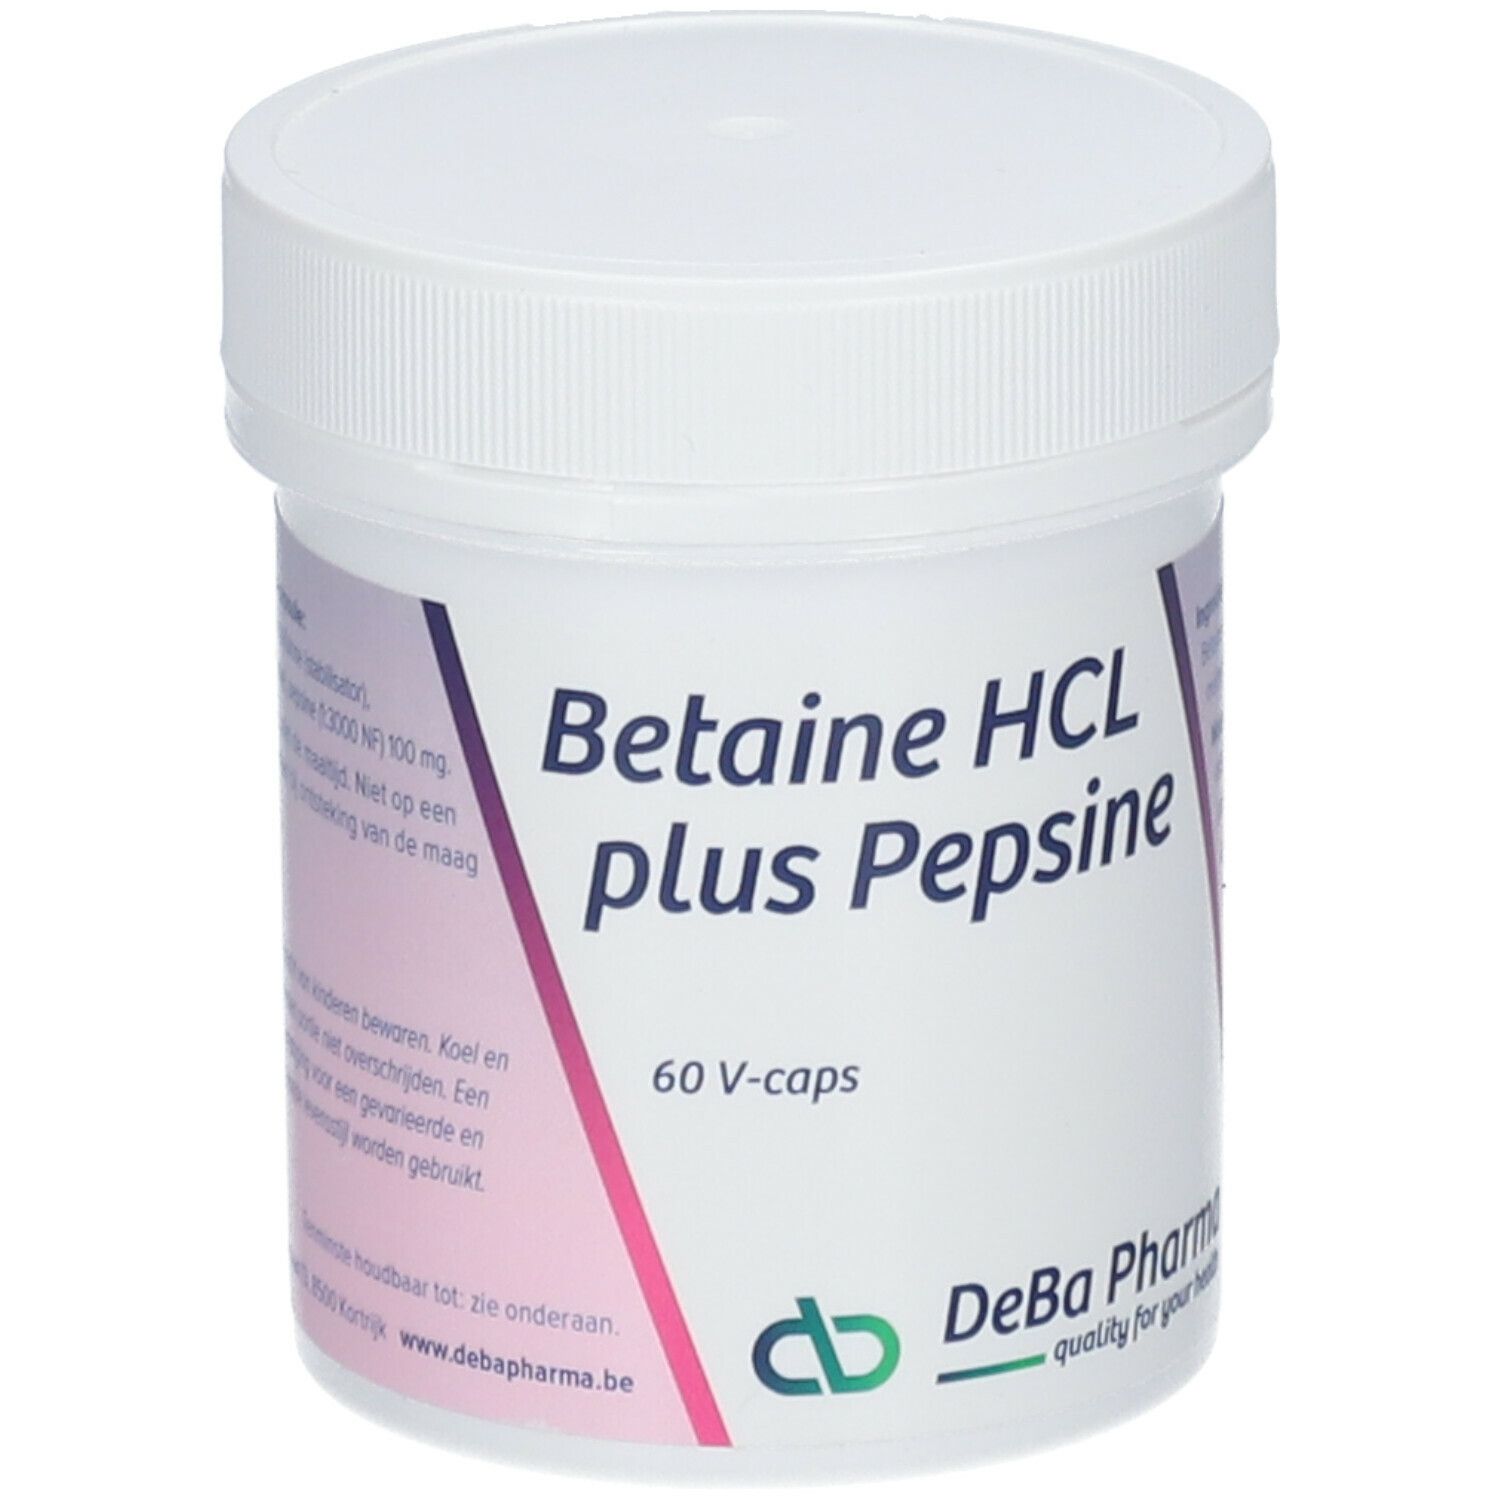 DeBa Pharma Betaine HCL